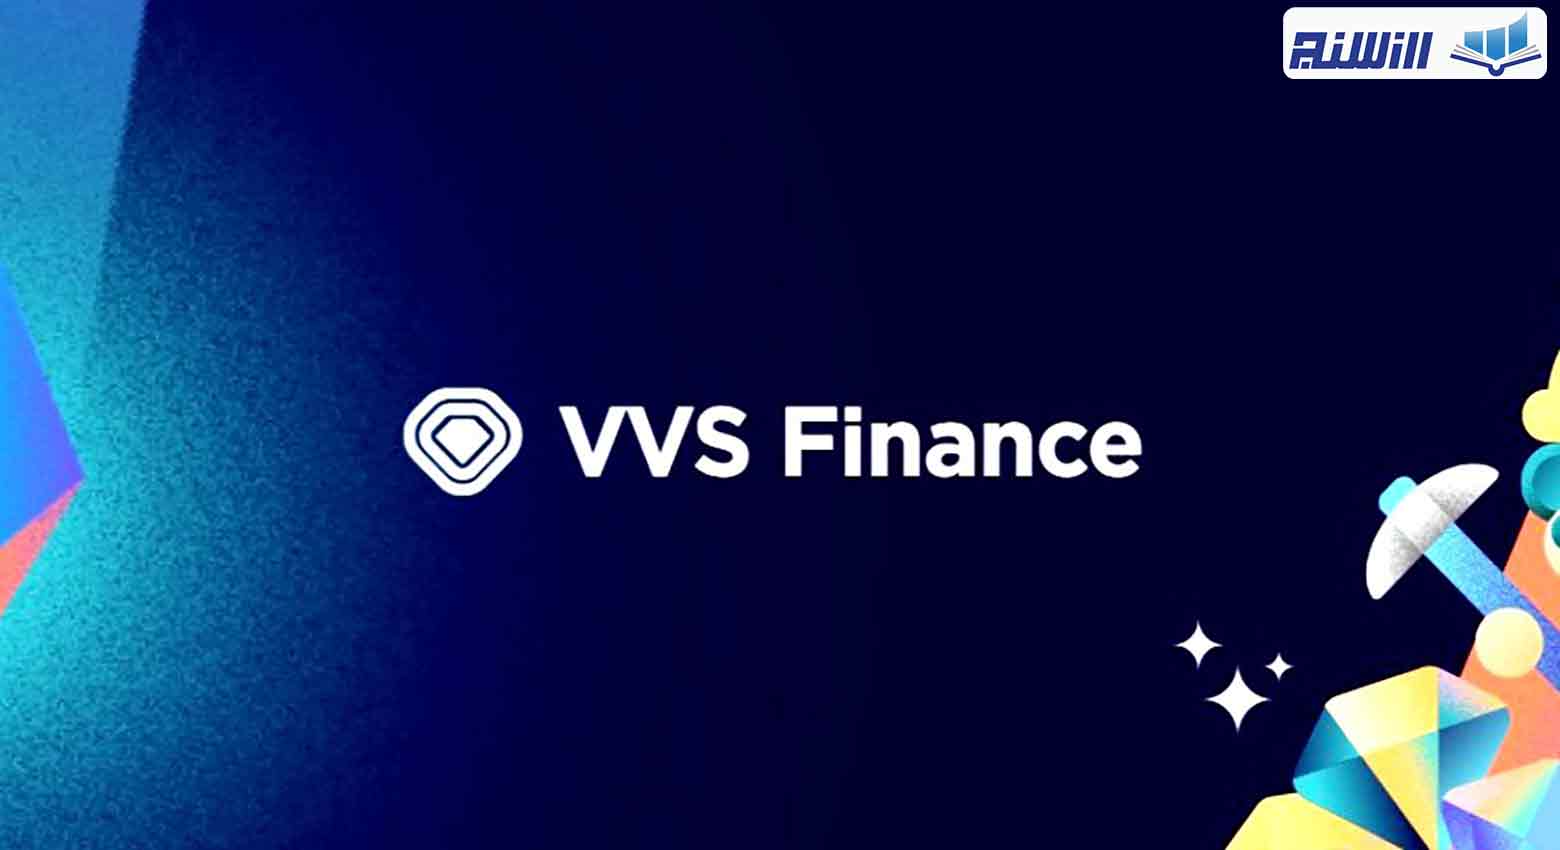 آموزش صرافی غیرمتمرکز  VVS Finance (نحوه کار با صرافی VVS Finance)